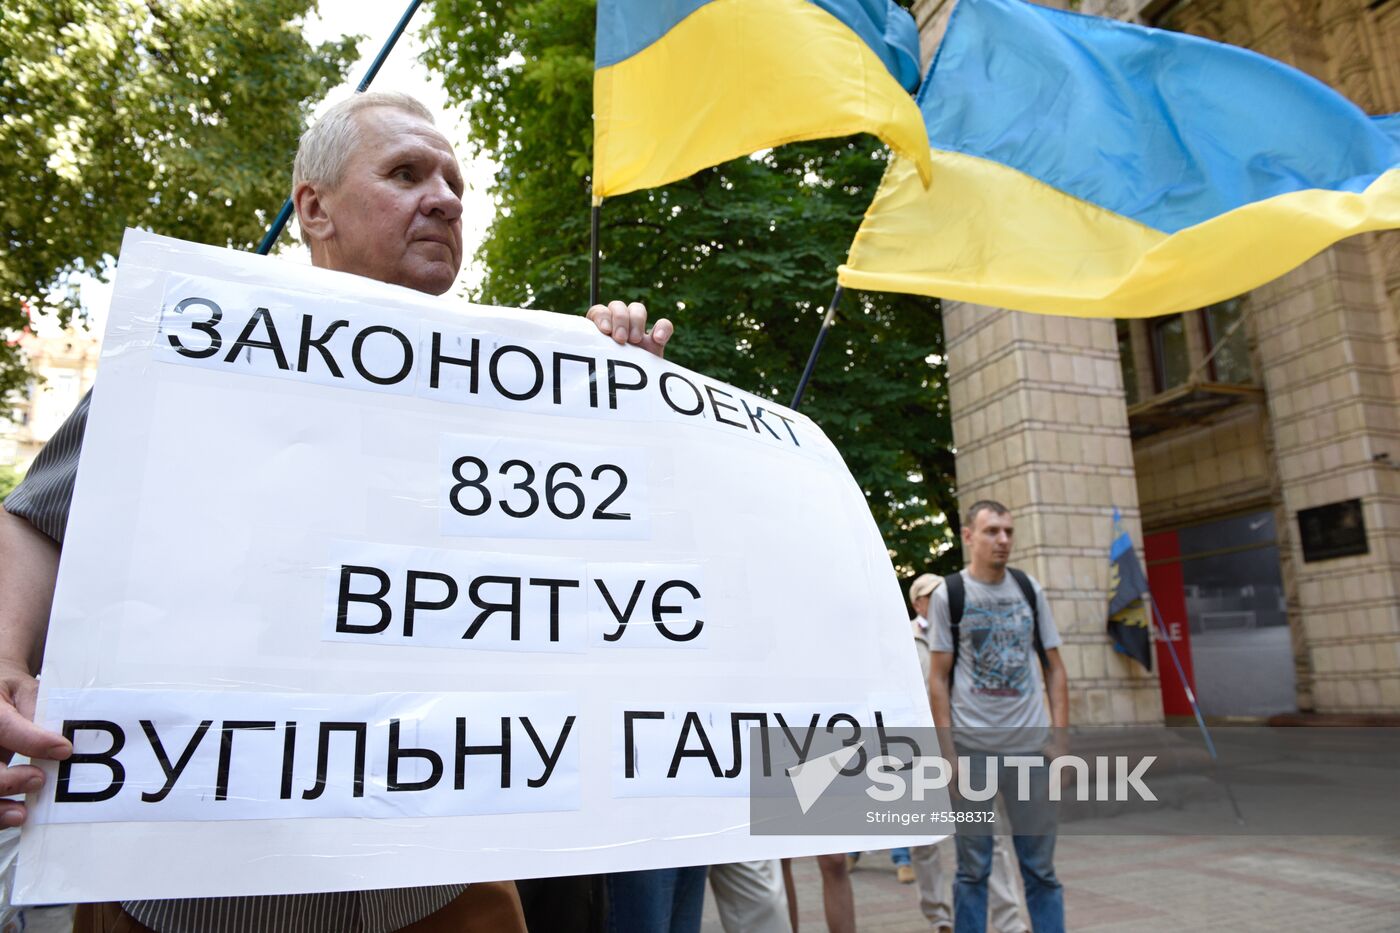 Miners protest in Kiev